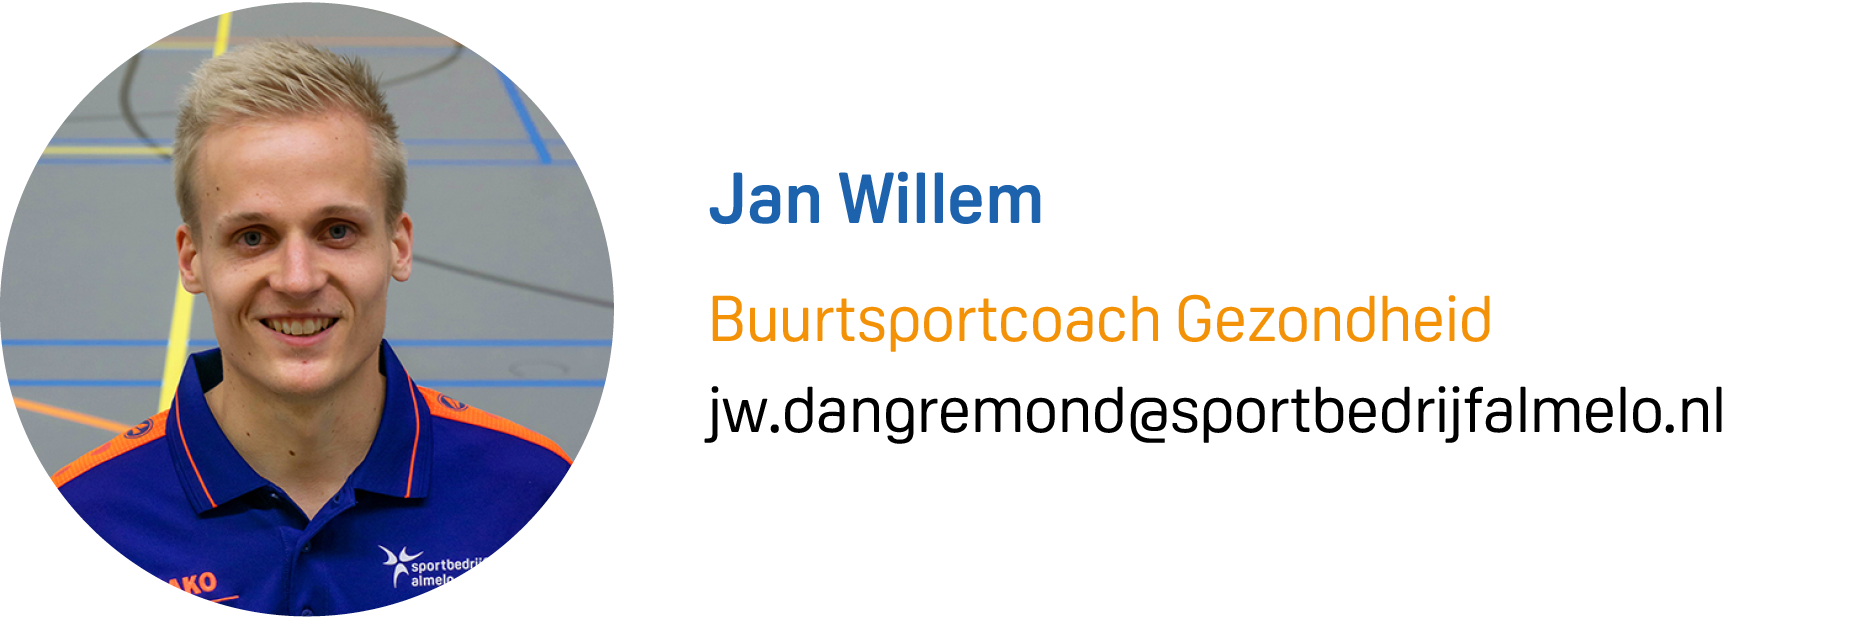 Jan Willem Visite MAIL.png